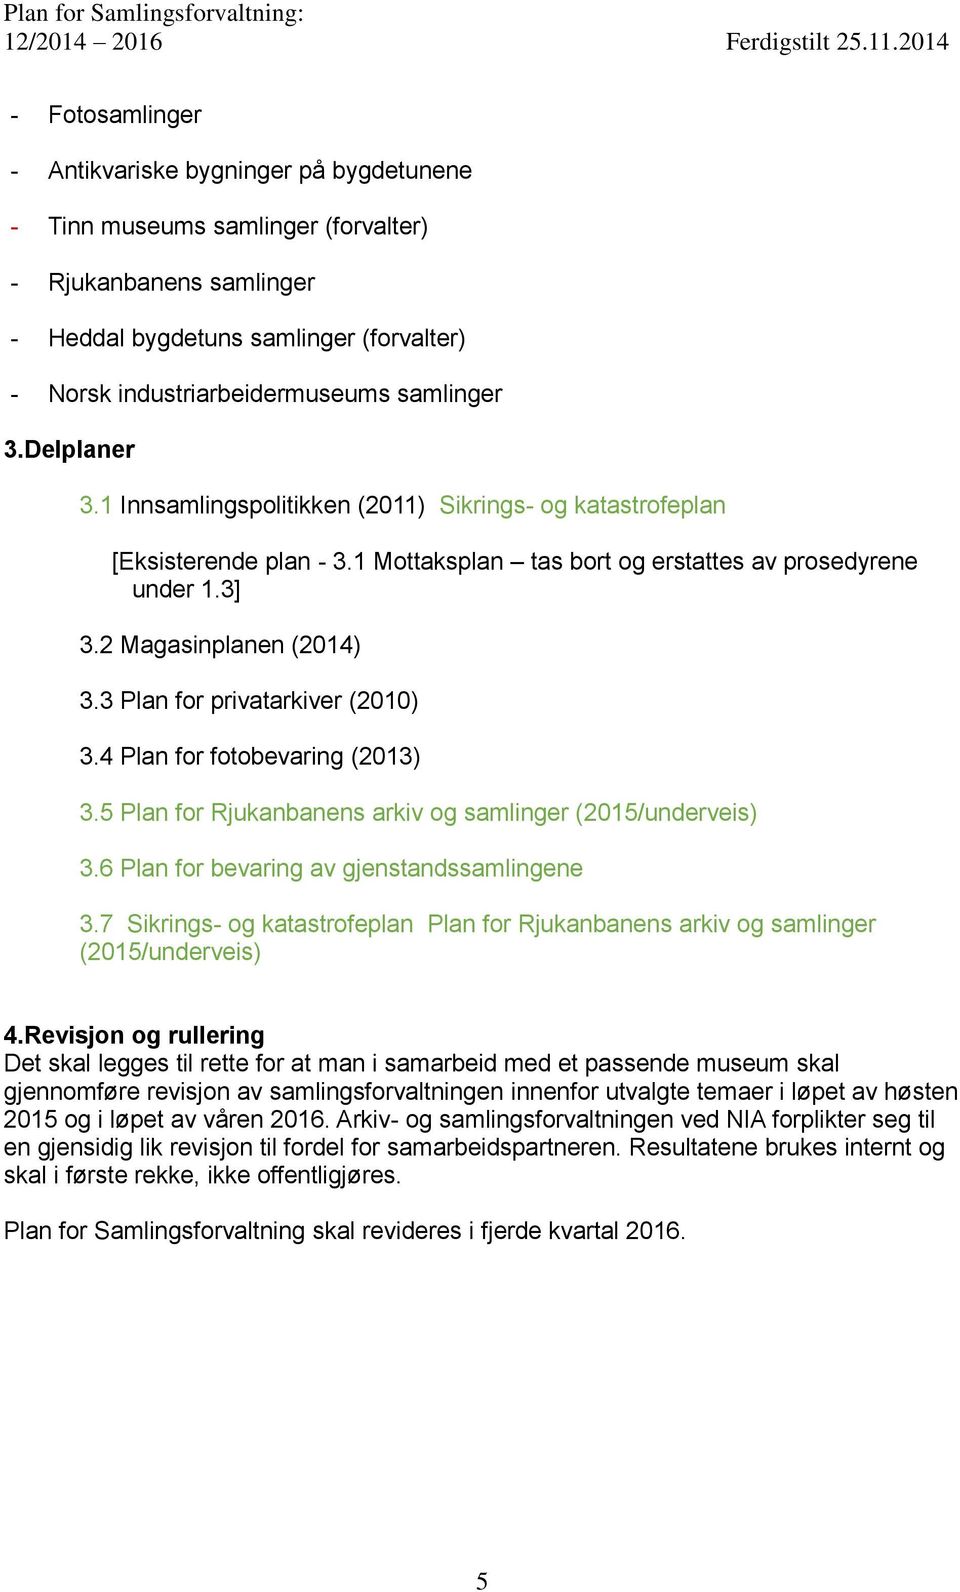 3 Plan for privatarkiver (2010) 3.4 Plan for fotobevaring (2013) 3.5 Plan for Rjukanbanens arkiv og samlinger (2015/underveis) 3.6 Plan for bevaring av gjenstandssamlingene 3.